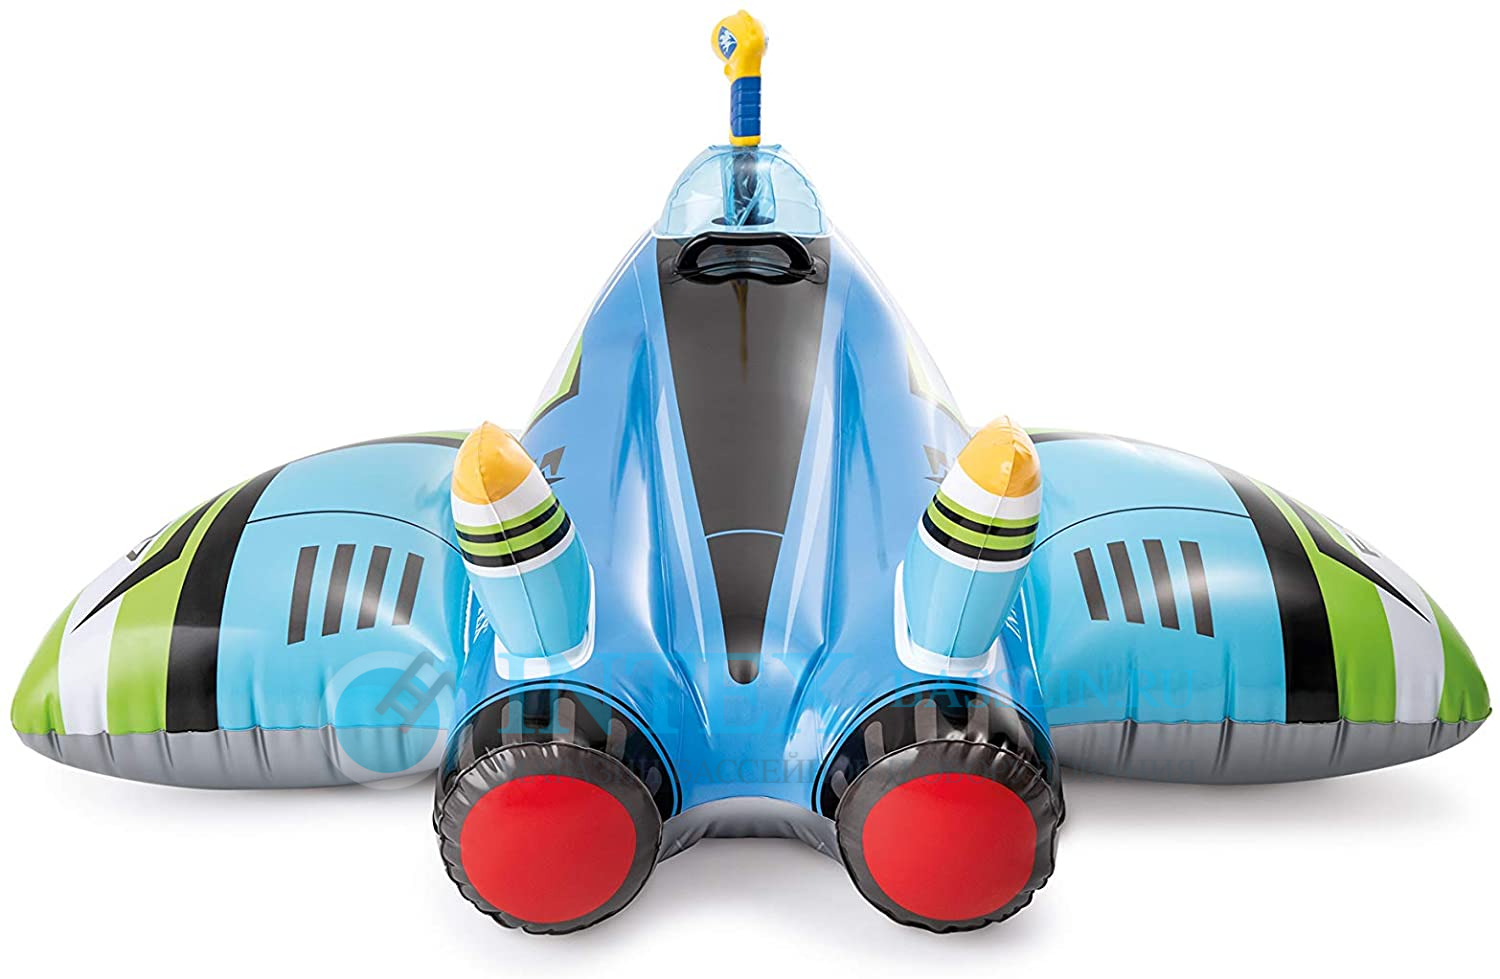 Надувная игрушка-наездник INTEX "Космический самолёт" с разбрызгивателем, голубой, артикул 57536-B